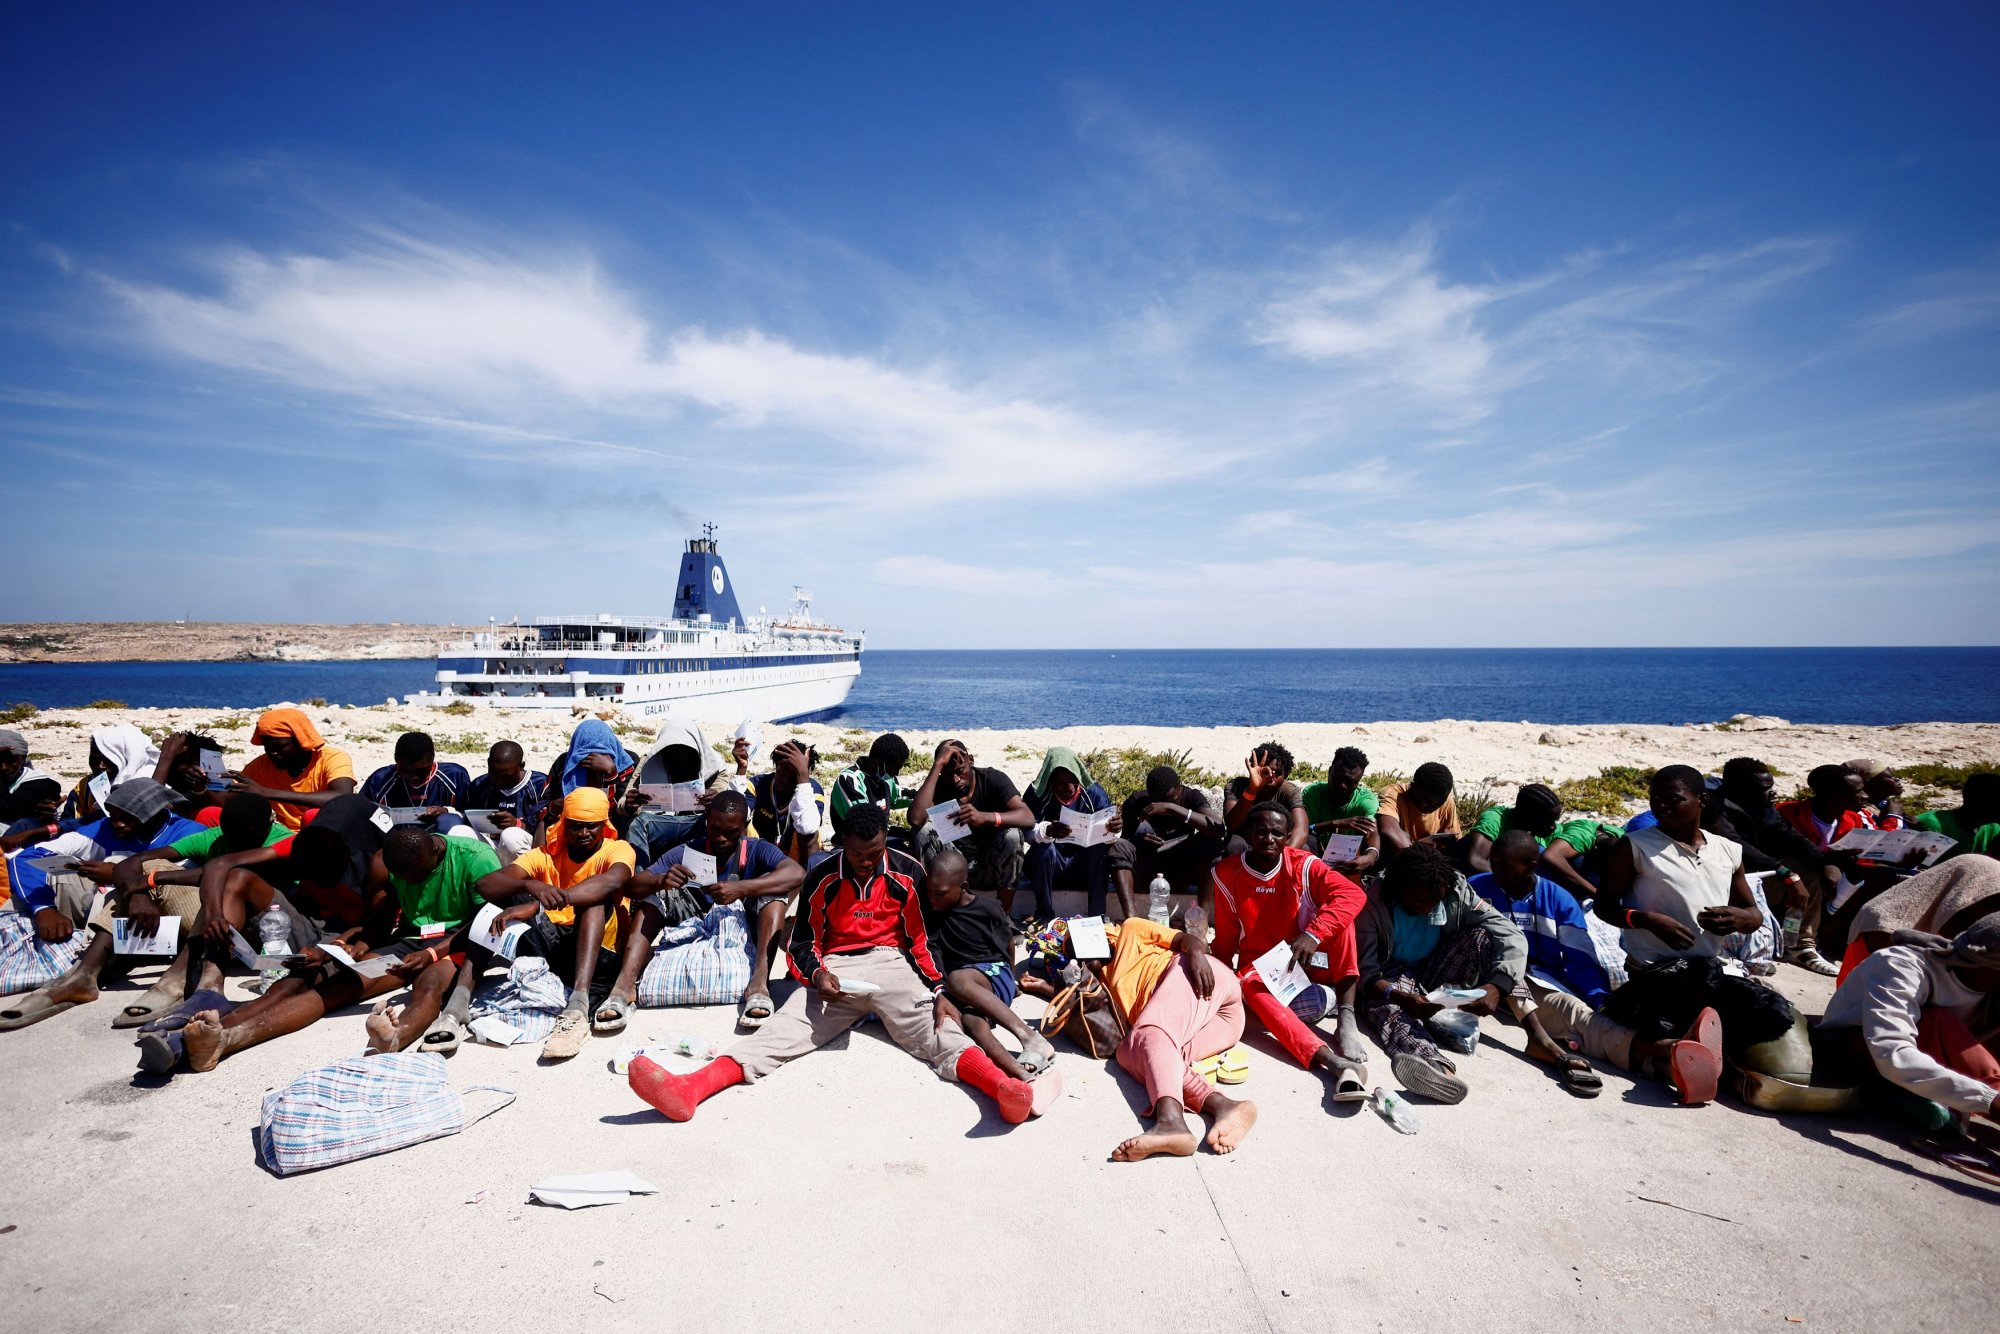 Λαμπεντούζα: Ρεκόρ αφίξεων μεταναστών και προσφύγων - «Οι πολίτες είναι απελπισμένοι, να παρέμβει η Ευρώπη»